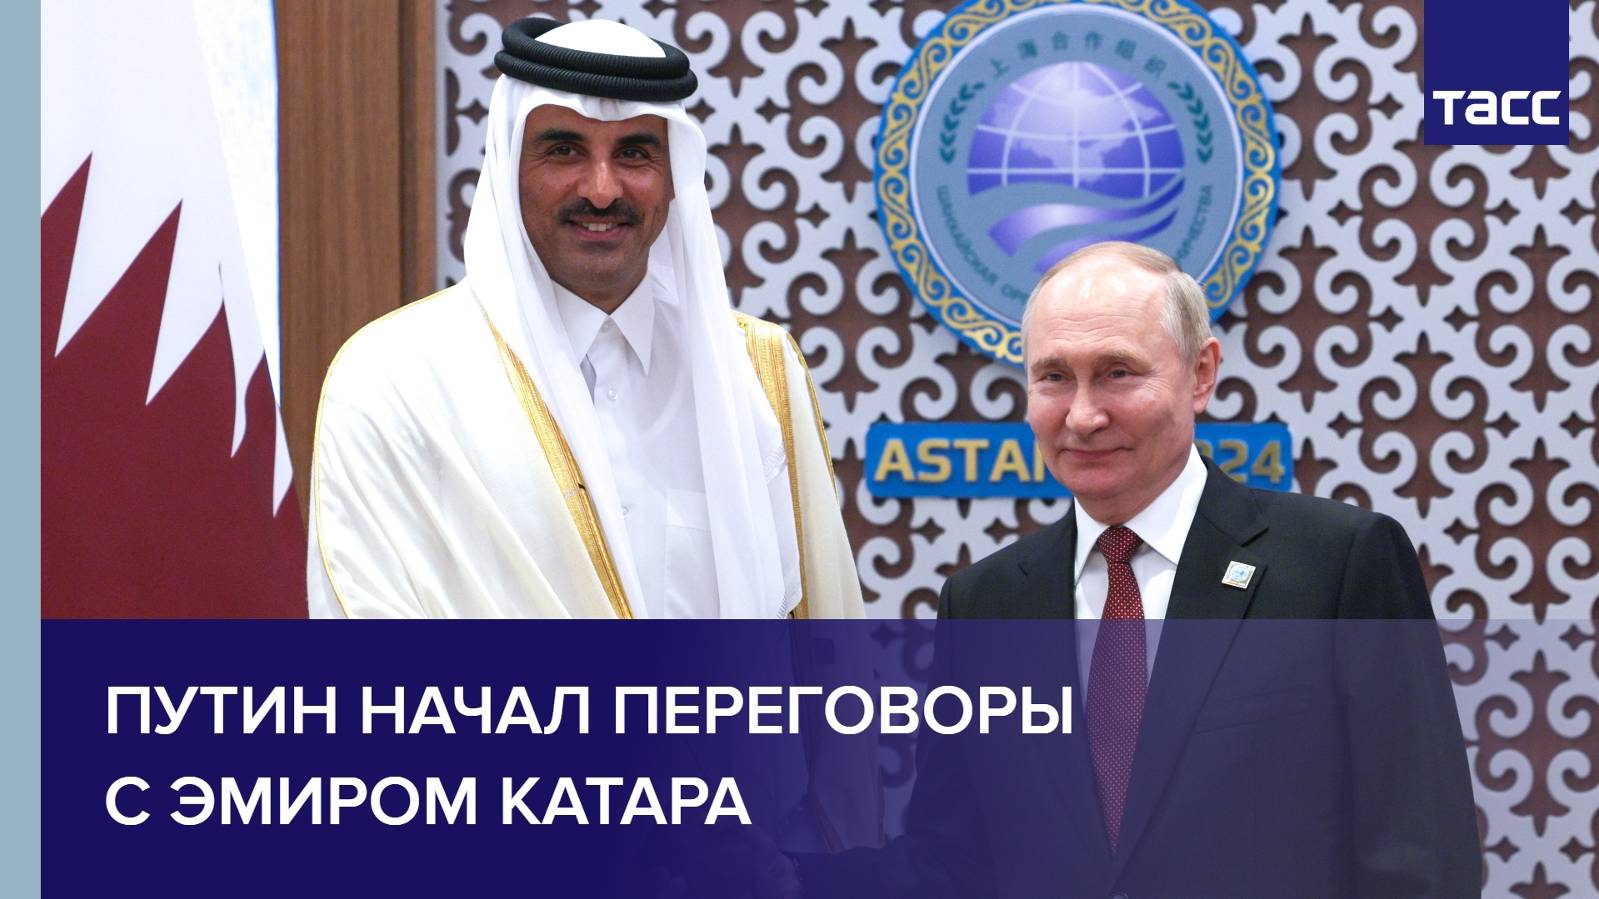 Путин начал переговоры с эмиром Катара